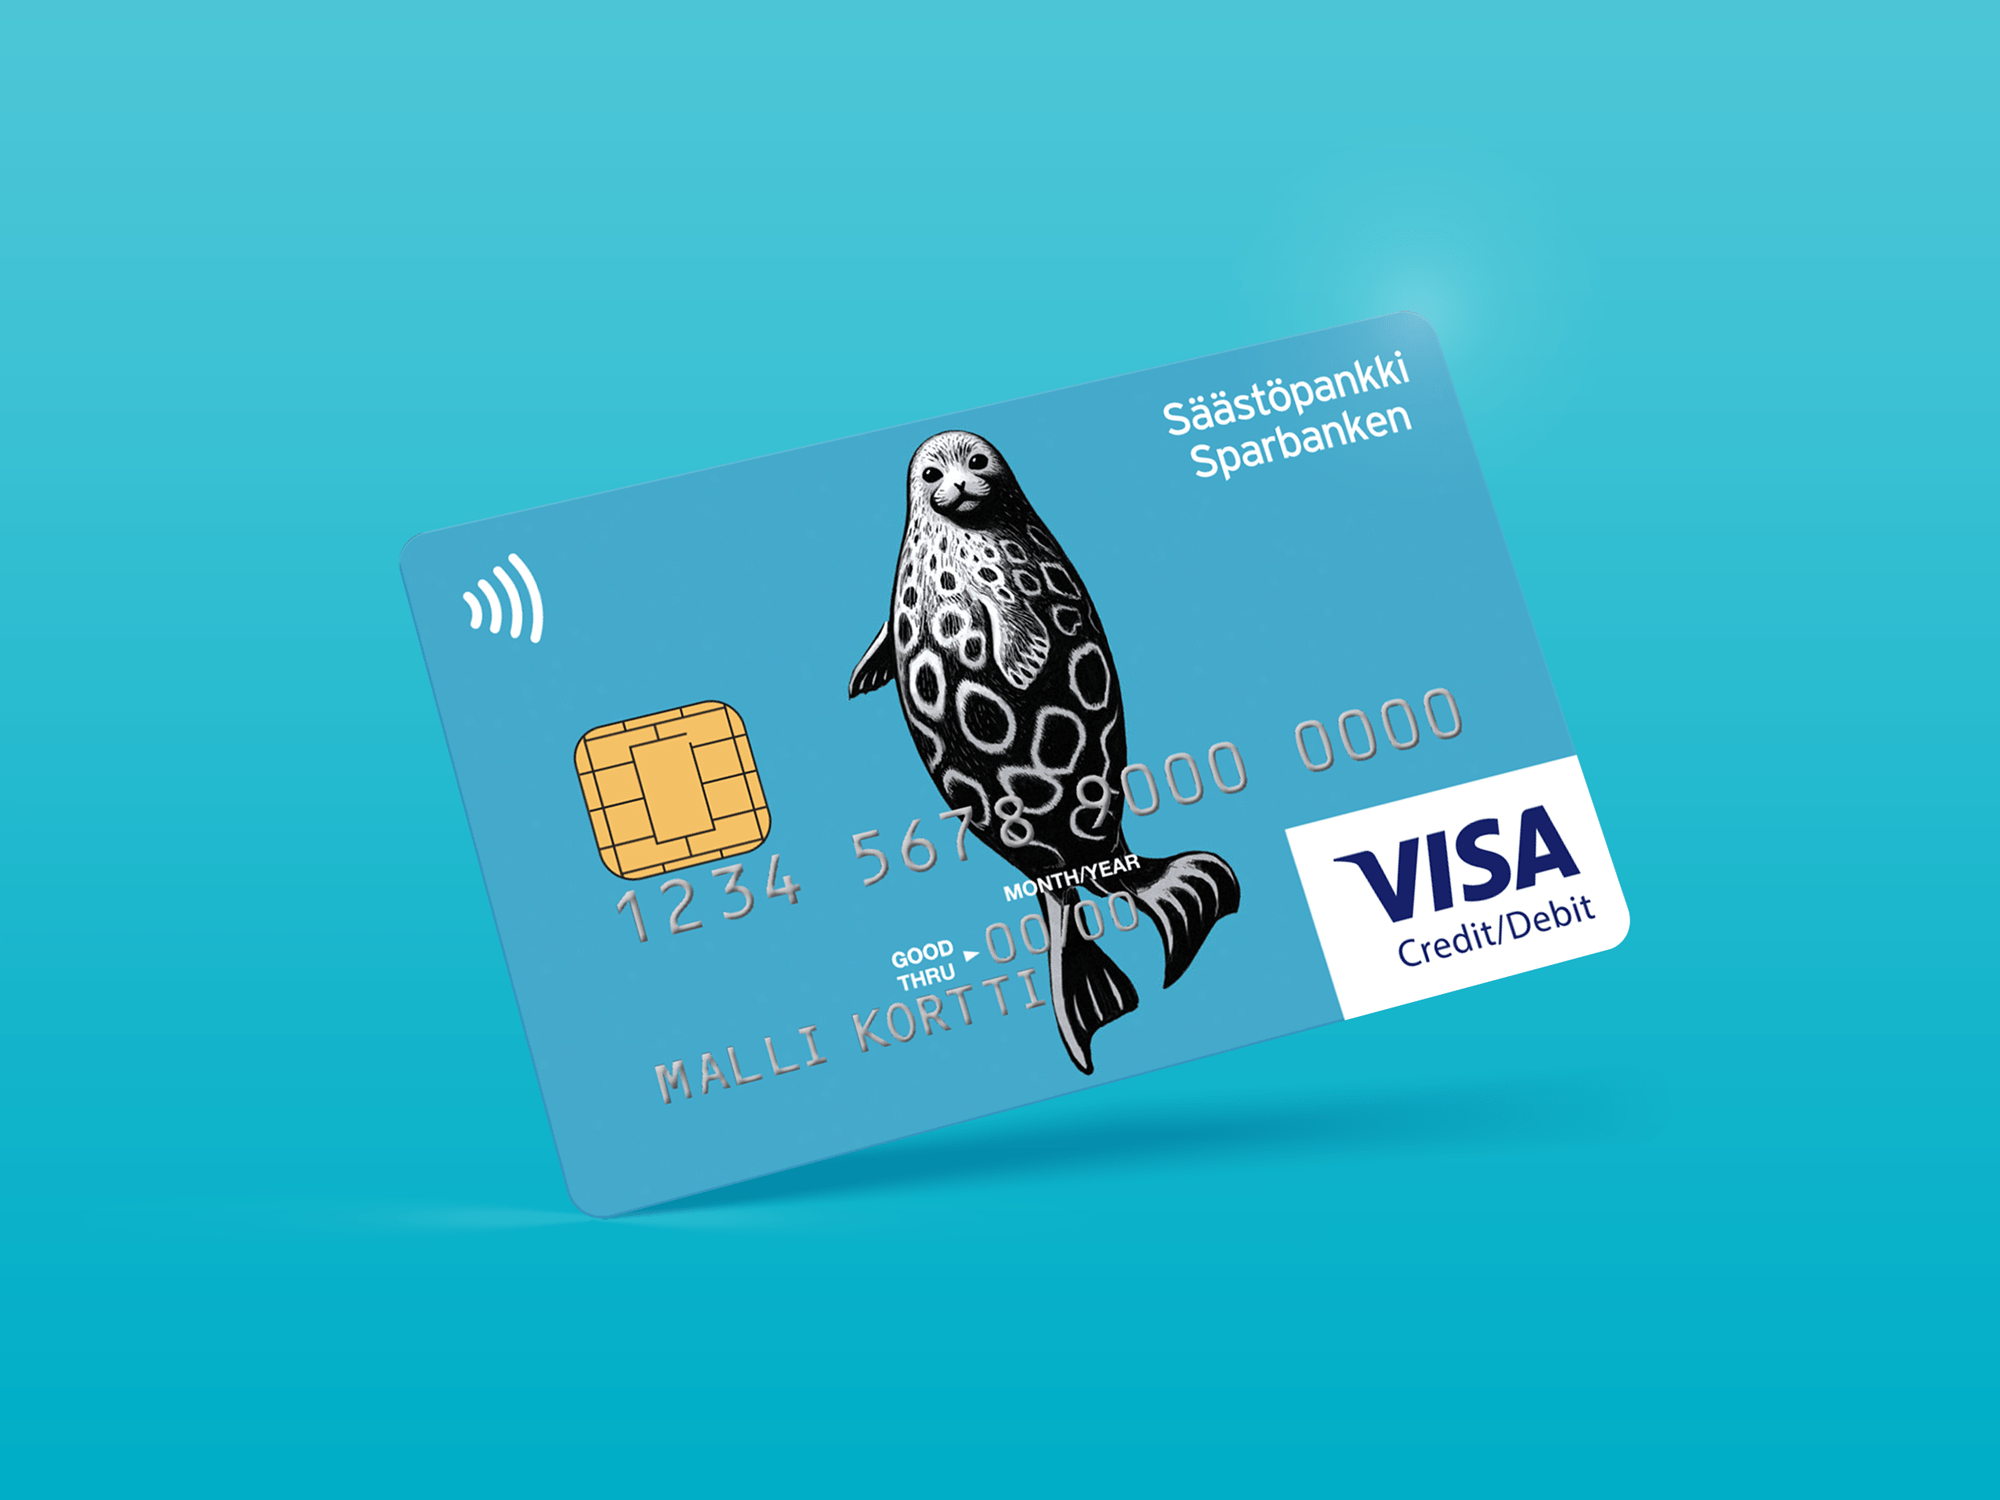 Visa Credit/Debit-kort från Sparbanken u2013 flexibla betalningar 